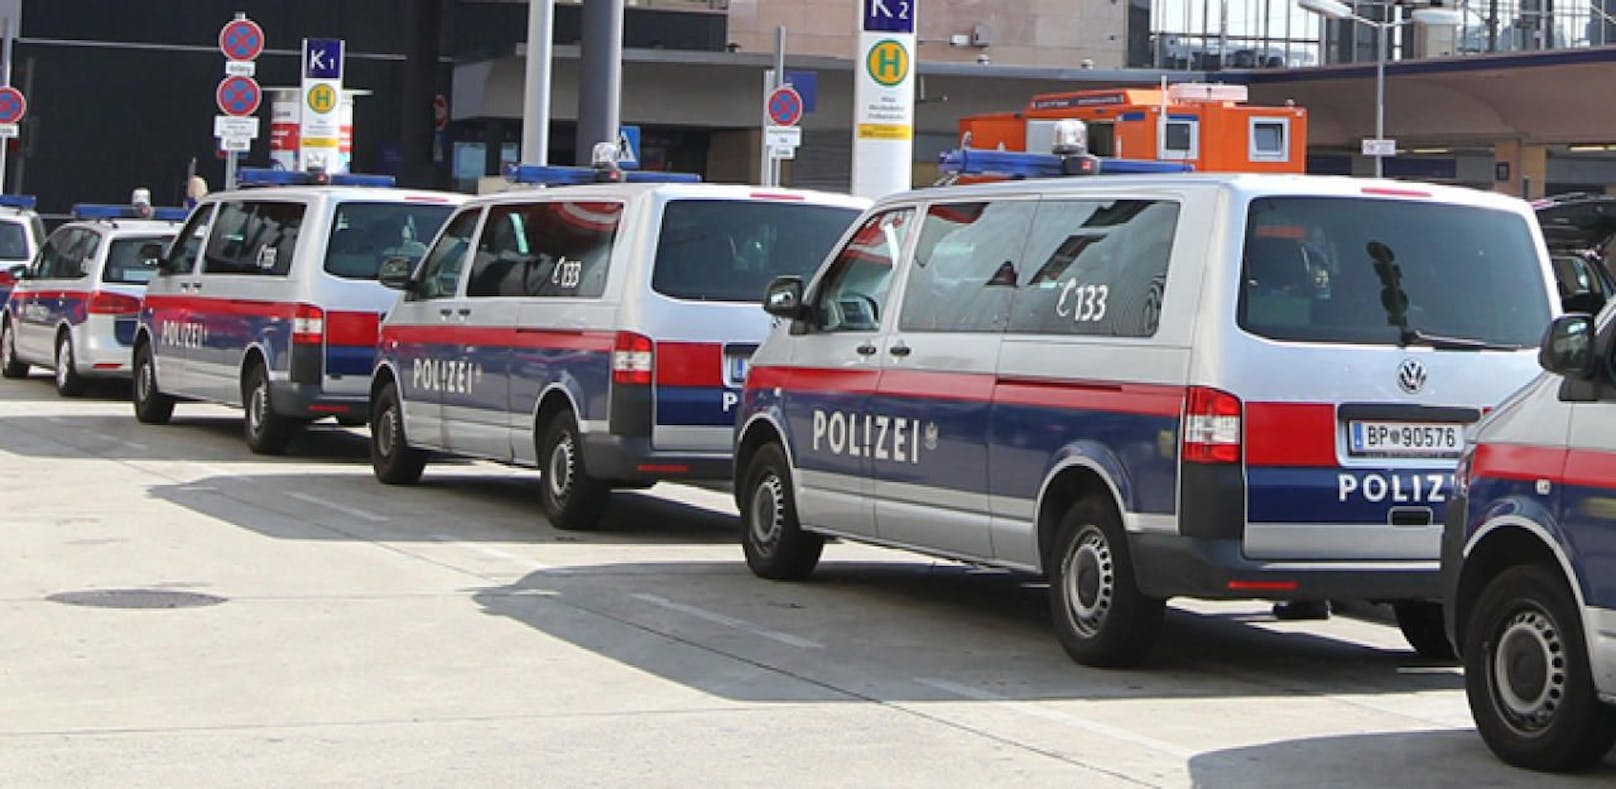 Bei den Attacken wurden mehrere Polizisten verletzt.